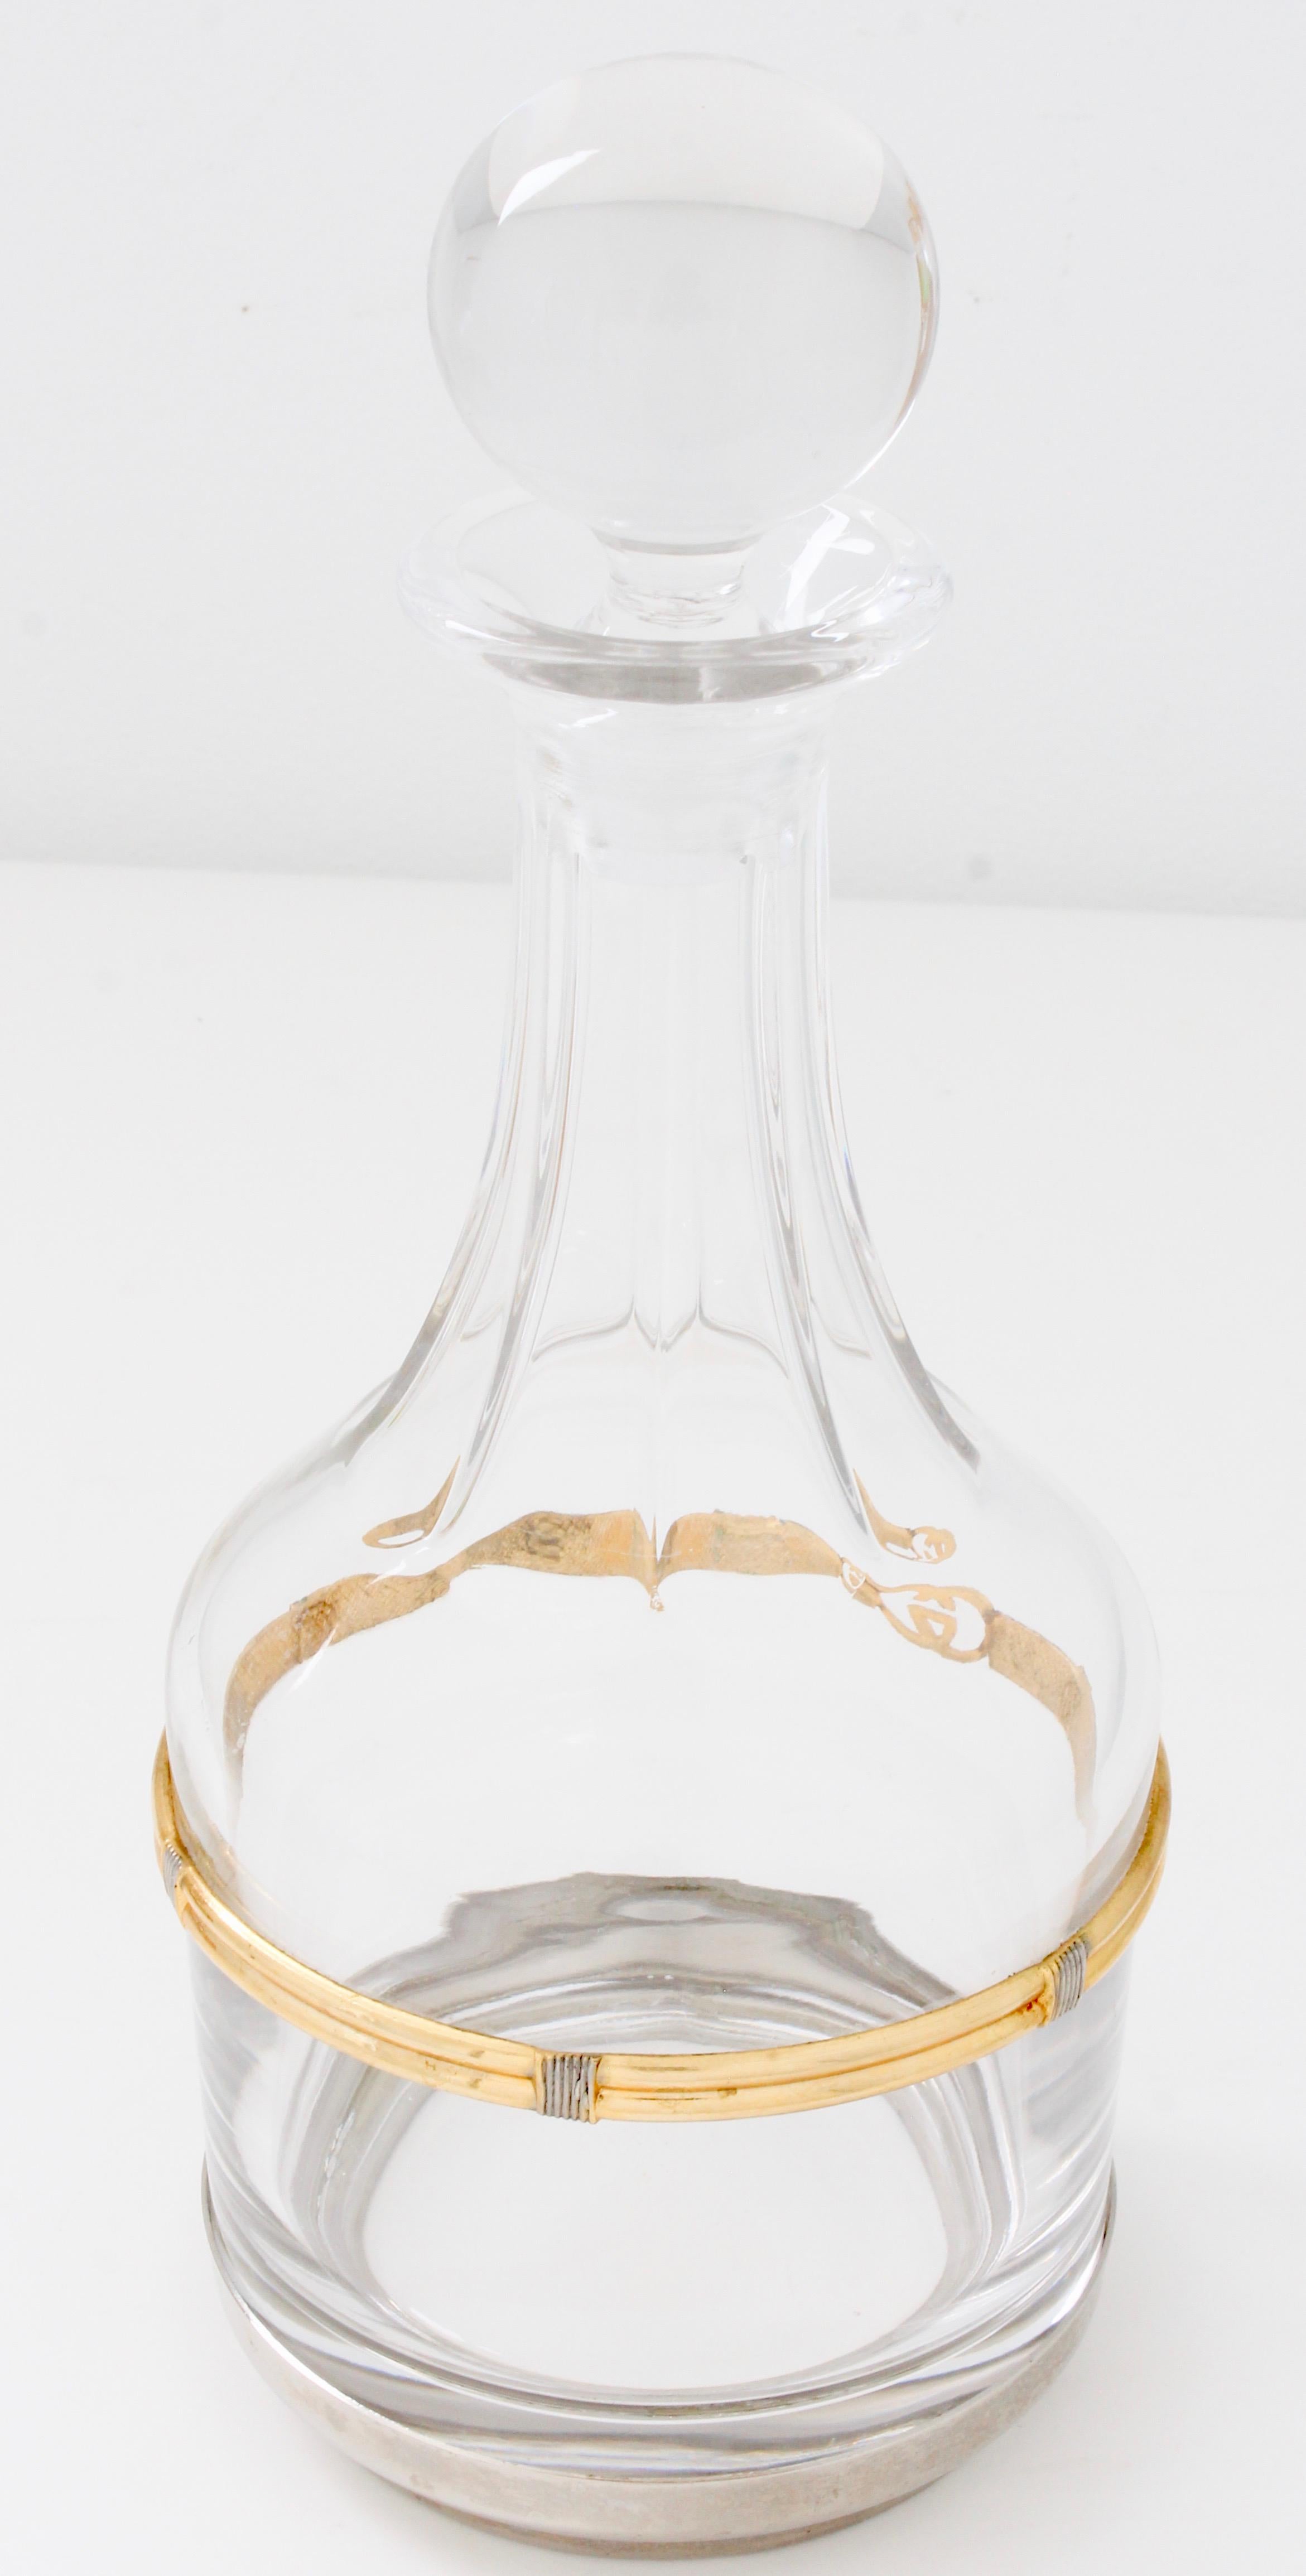 Seltene Gucci Kristall Wein Dekanter mit Stopper GG Logo Gold Silber Seilmotiv 70er Jahre (Grau)